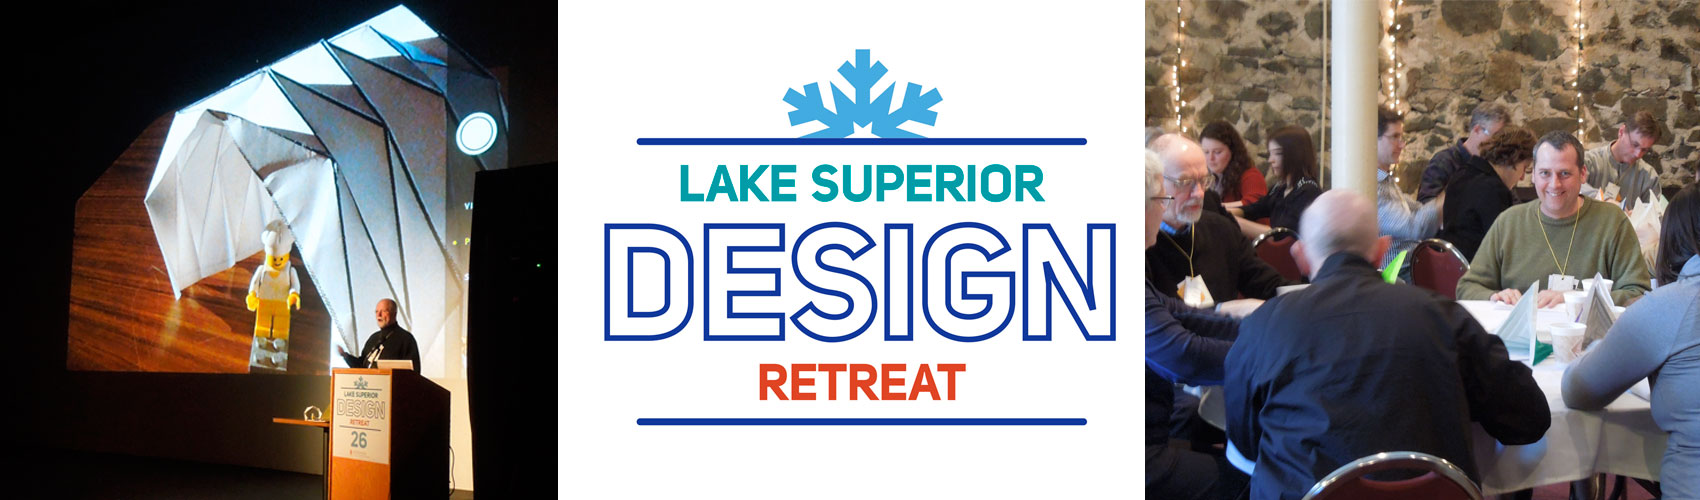 Lake Superior Design Retreat